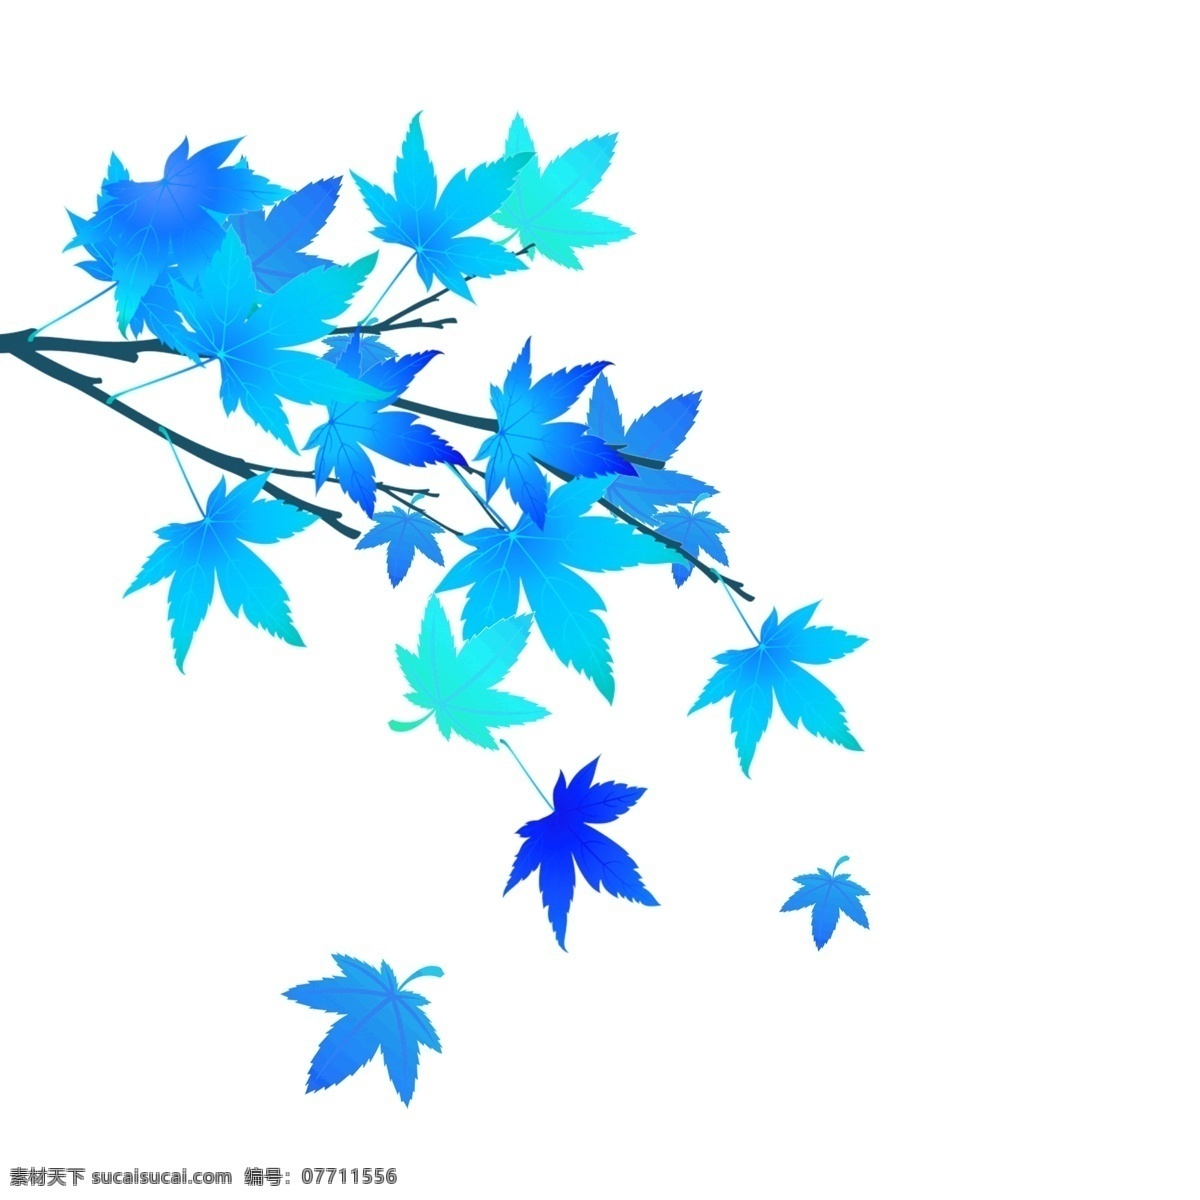 蓝色 叶子 装饰 元素 蓝色叶子 叶子元素 叶子素材 叶子装饰 卡通叶子 手绘叶子 叶片 叶片元素 叶片素材 叶片装饰 卡通叶片 卡通叶 元素设计 动漫动画 风景漫画